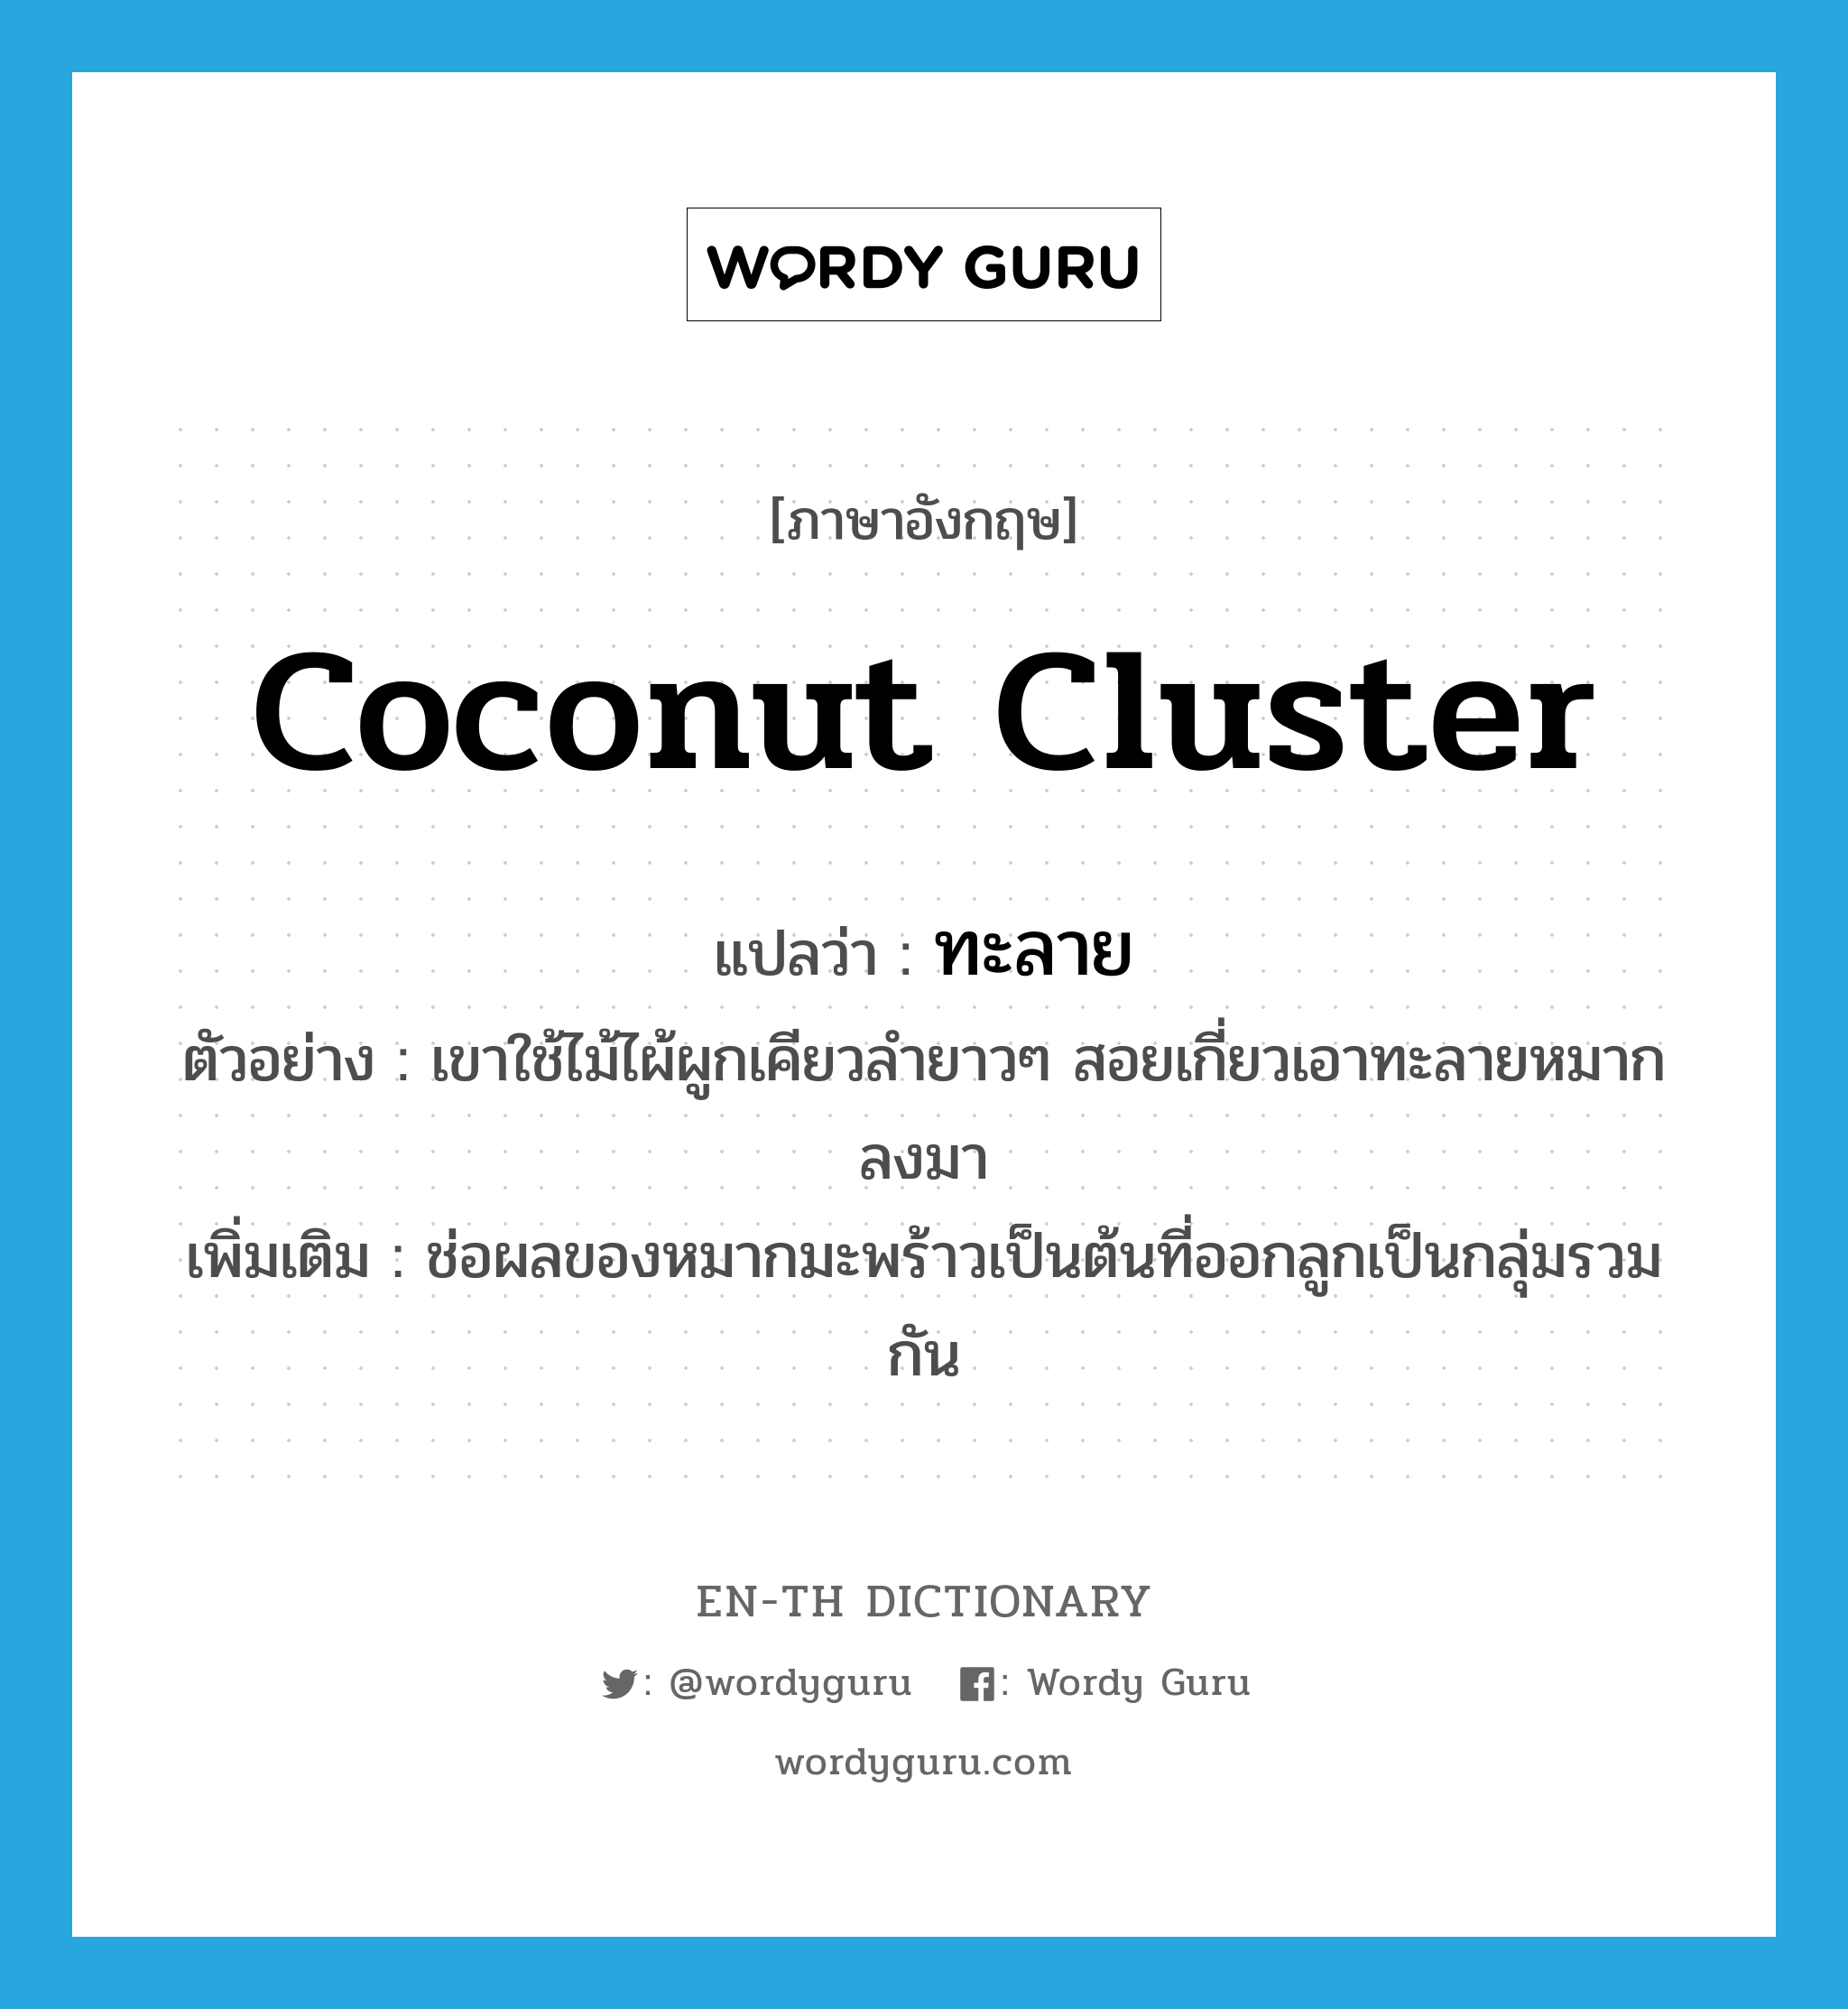 ทะลาย ภาษาอังกฤษ?, คำศัพท์ภาษาอังกฤษ ทะลาย แปลว่า coconut cluster ประเภท N ตัวอย่าง เขาใช้ไม้ไผ้ผูกเคียวลำยาวๆ สอยเกี่ยวเอาทะลายหมากลงมา เพิ่มเติม ช่อผลของหมากมะพร้าวเป็นต้นที่ออกลูกเป็นกลุ่มรวมกัน หมวด N